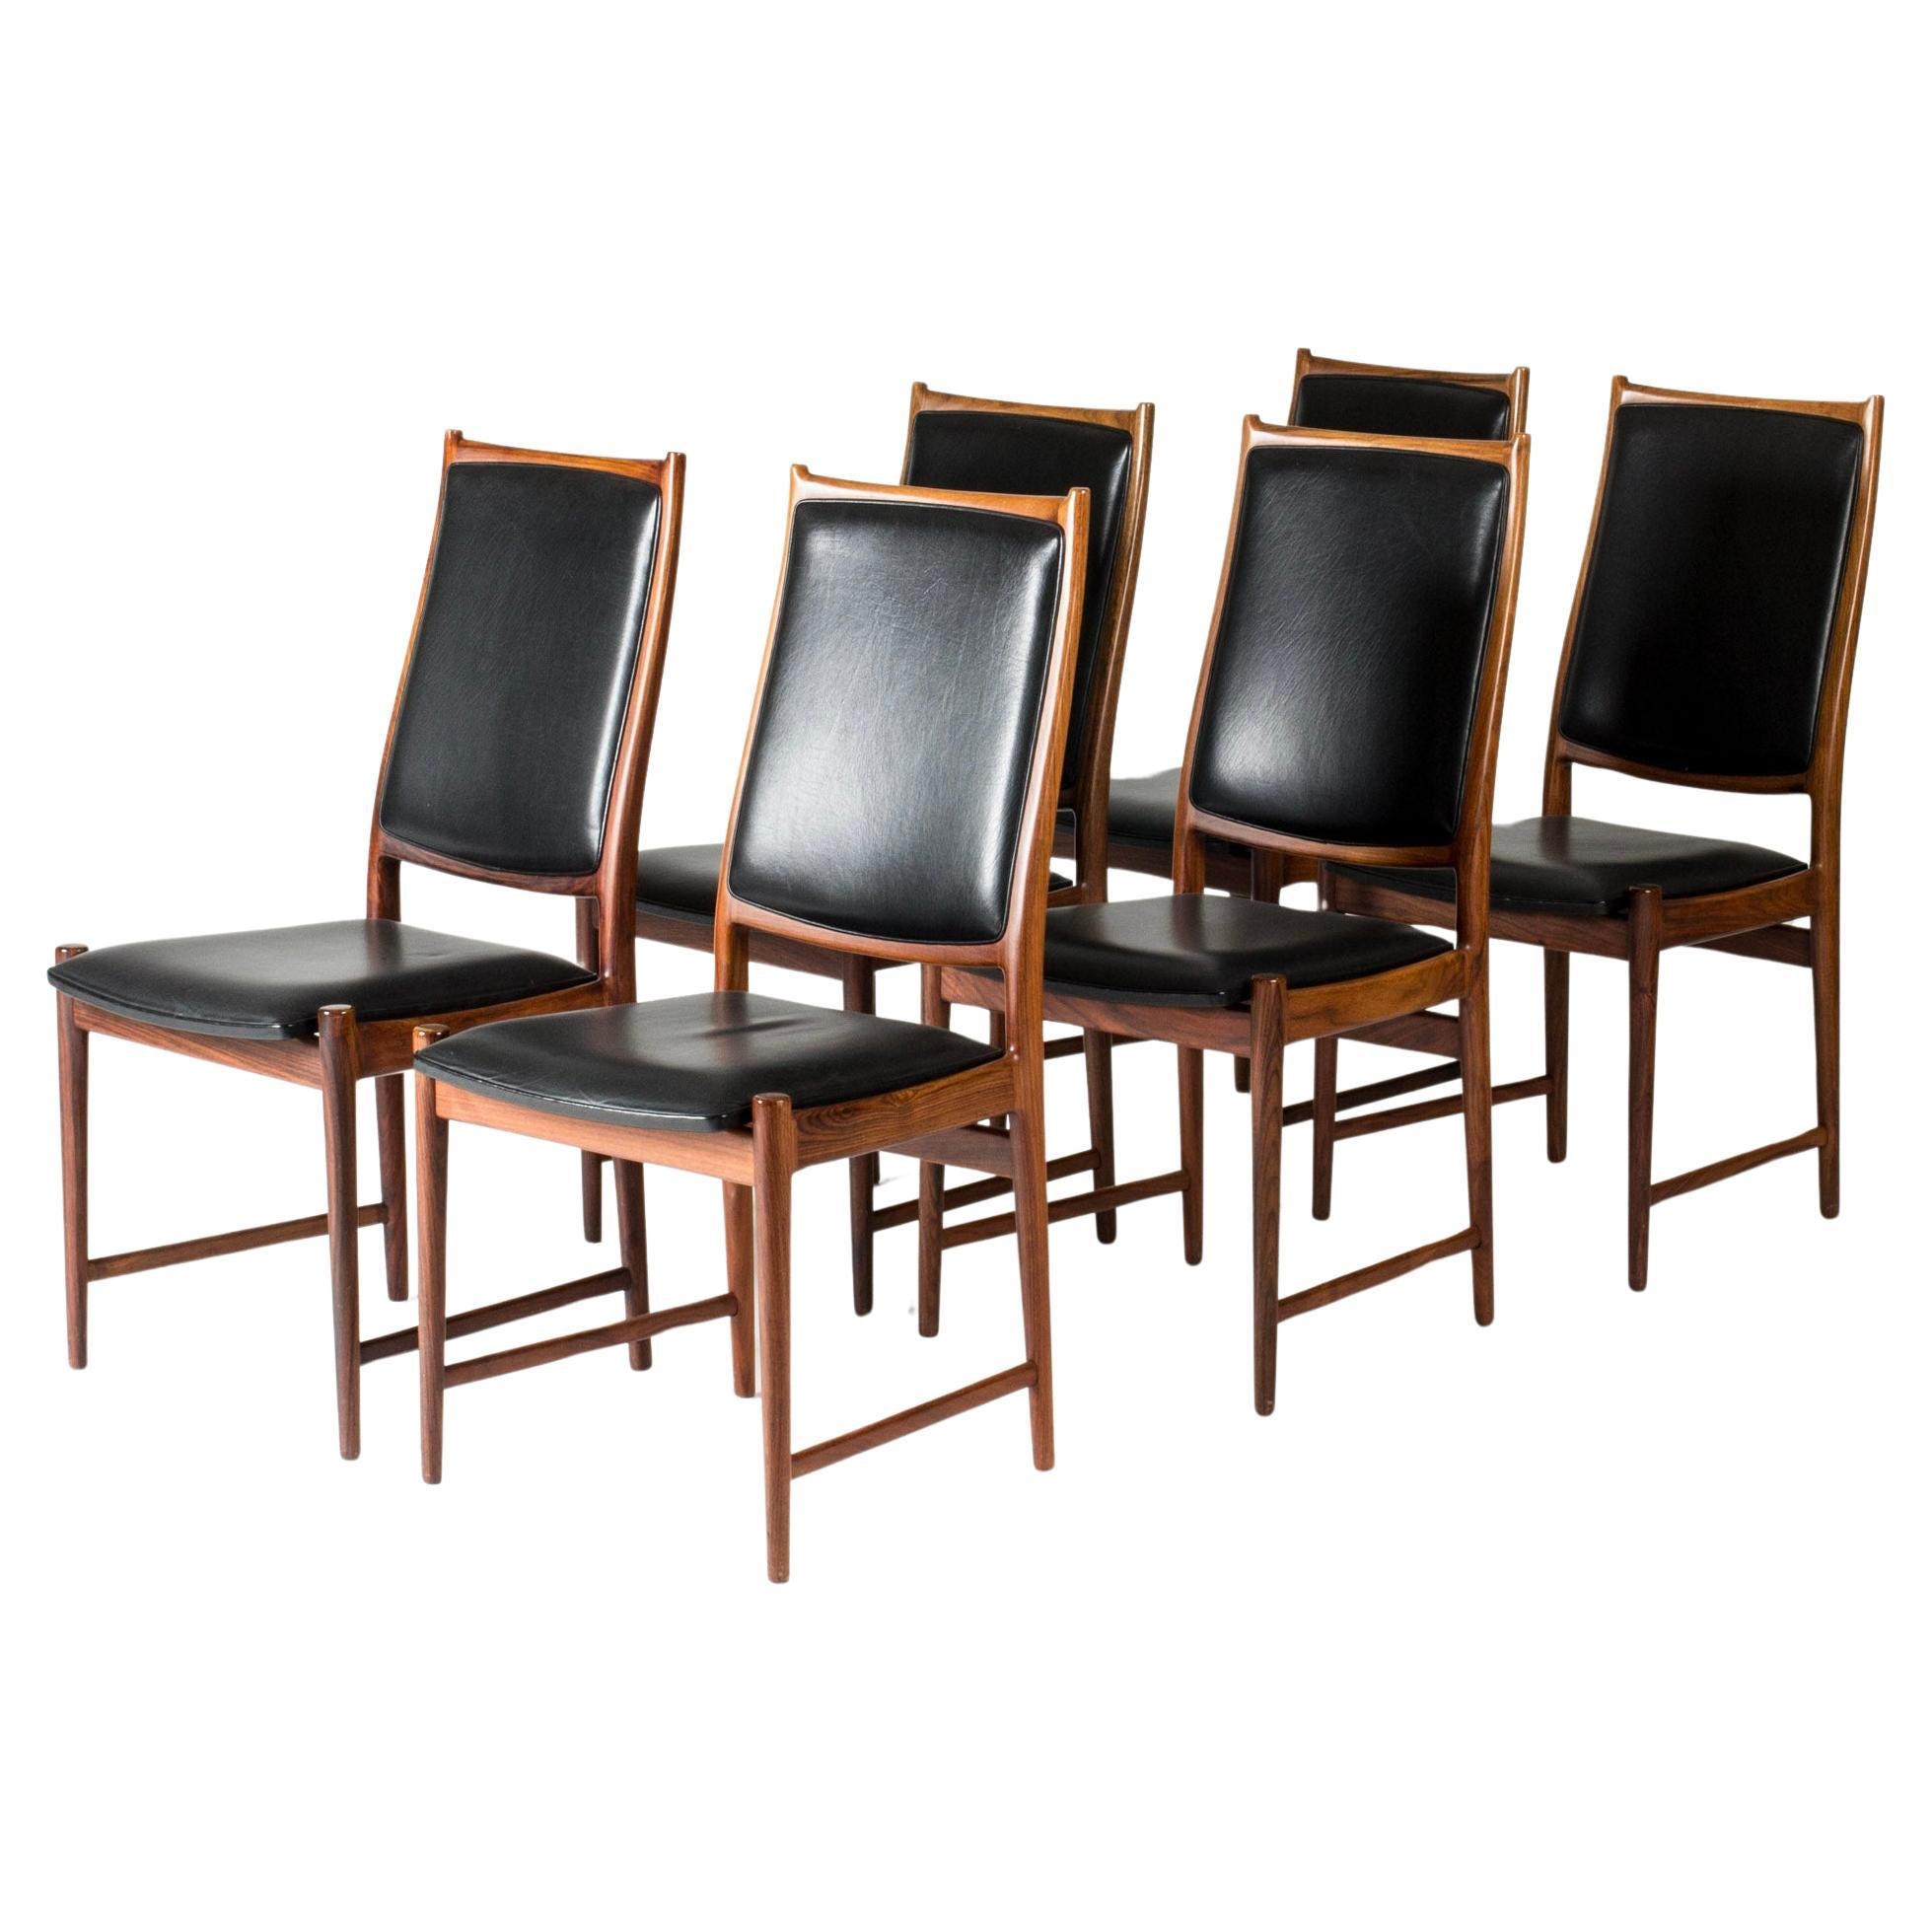 Bruksbo Dining Room Chairs